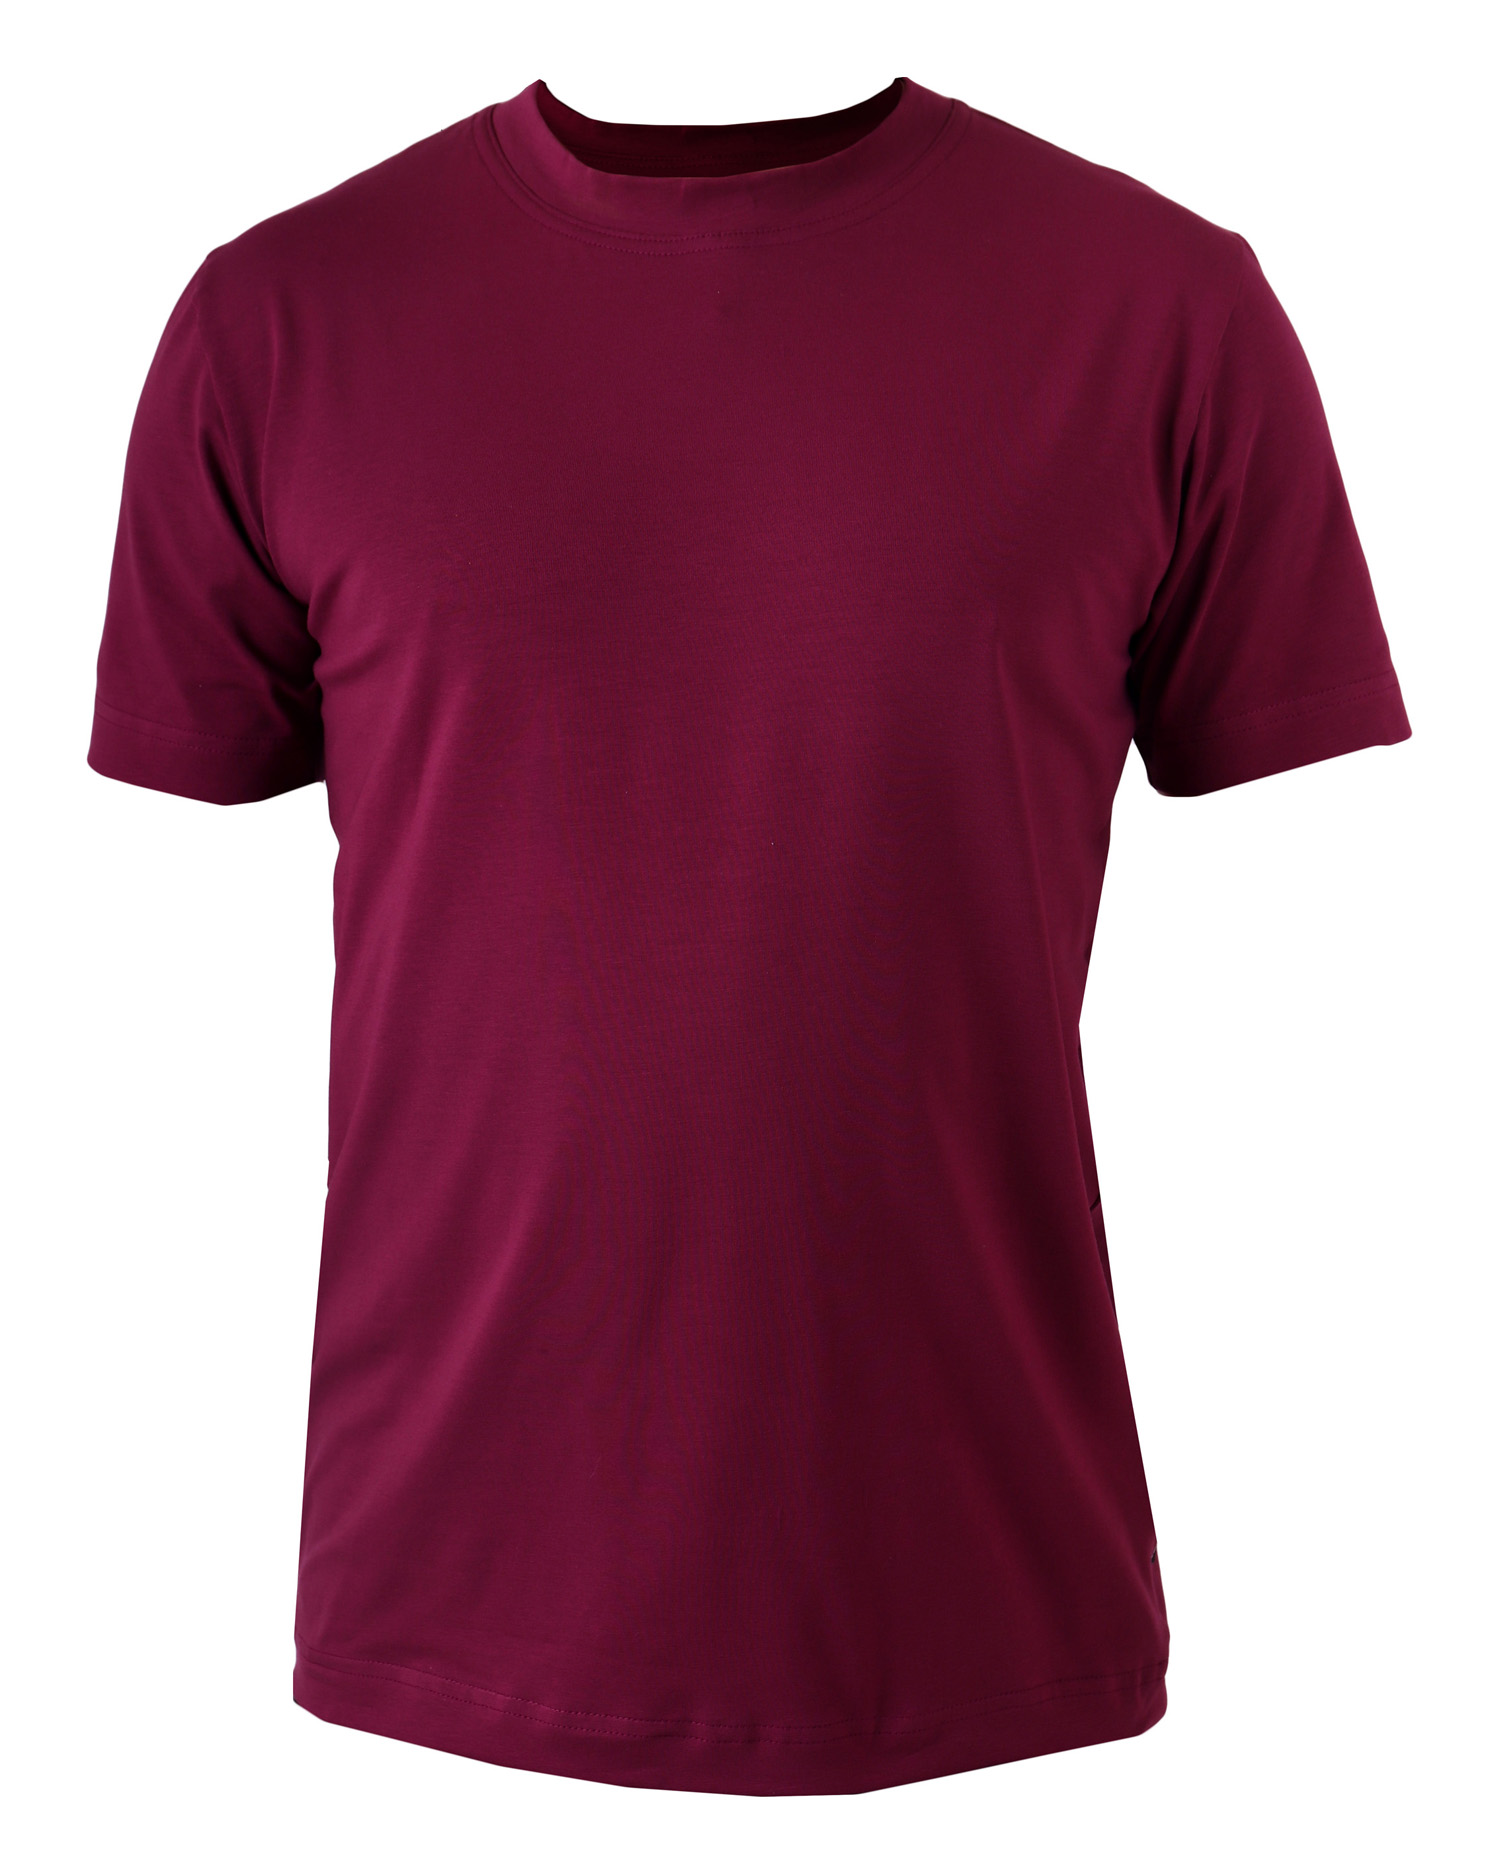 Pánské tričko Marek, L, 2. jakost č. 697